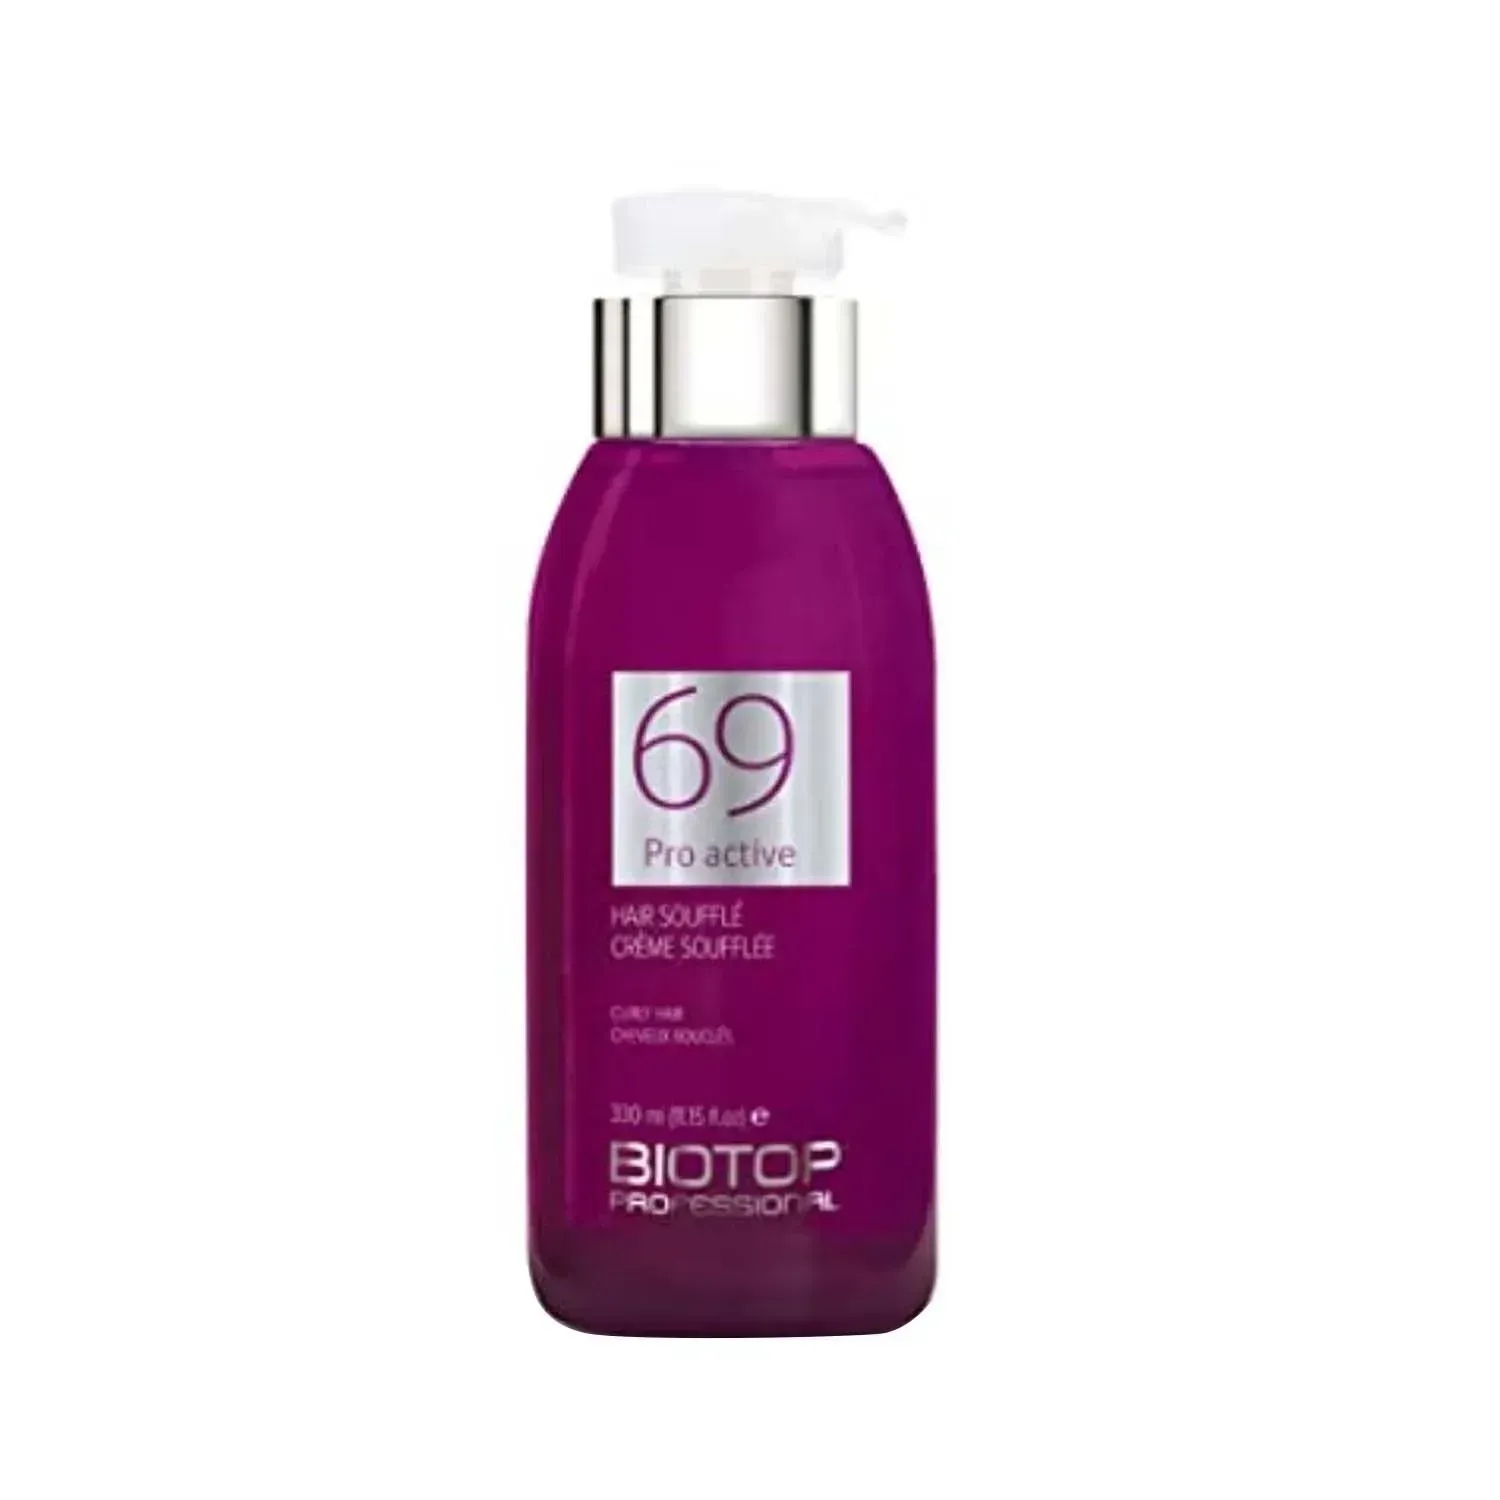 Biotop Professional | Biotop Professional 69 Pro Active Hair Souffle - (330ml)